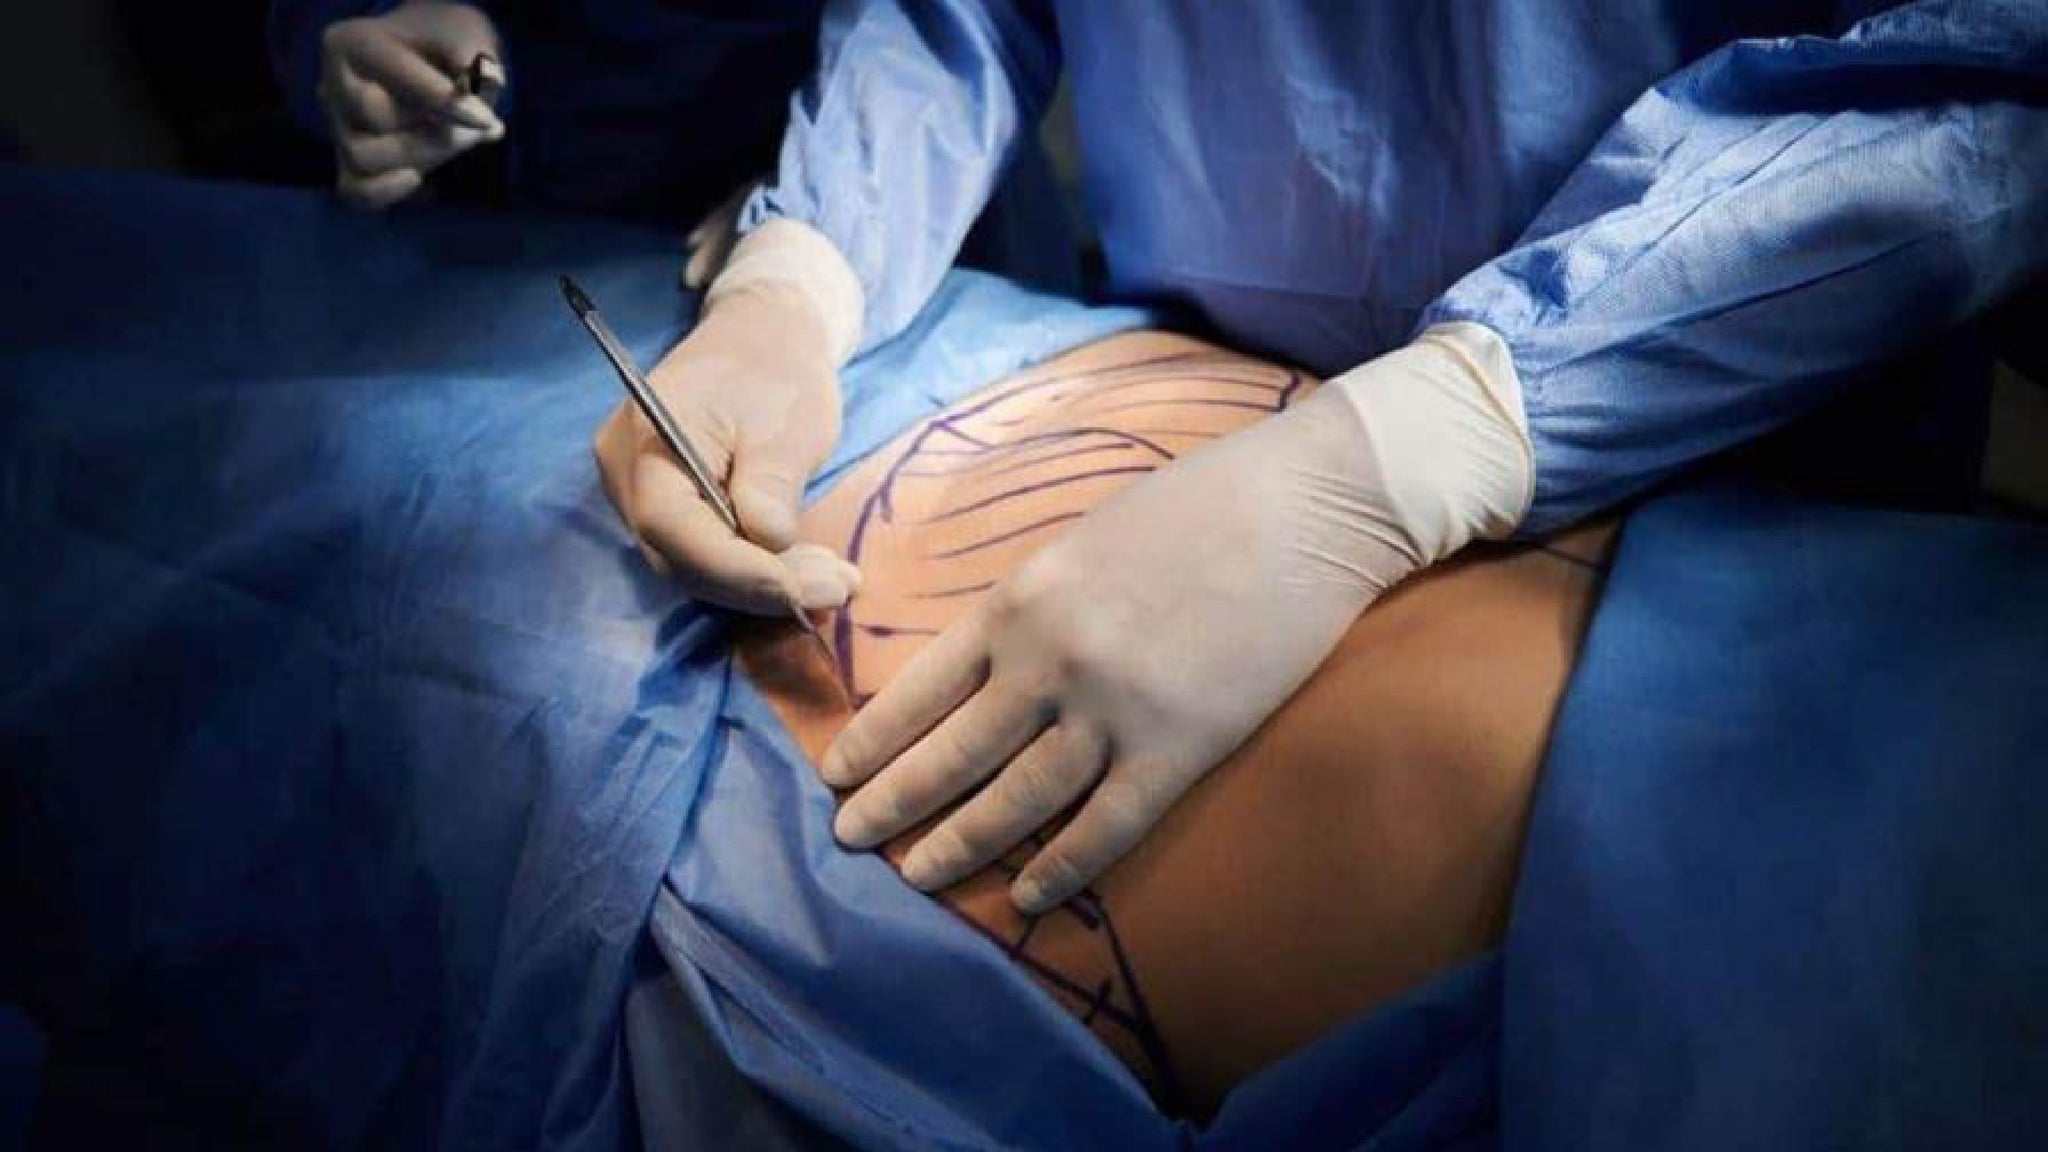 cirujano-plastico-practicando-liposuccion